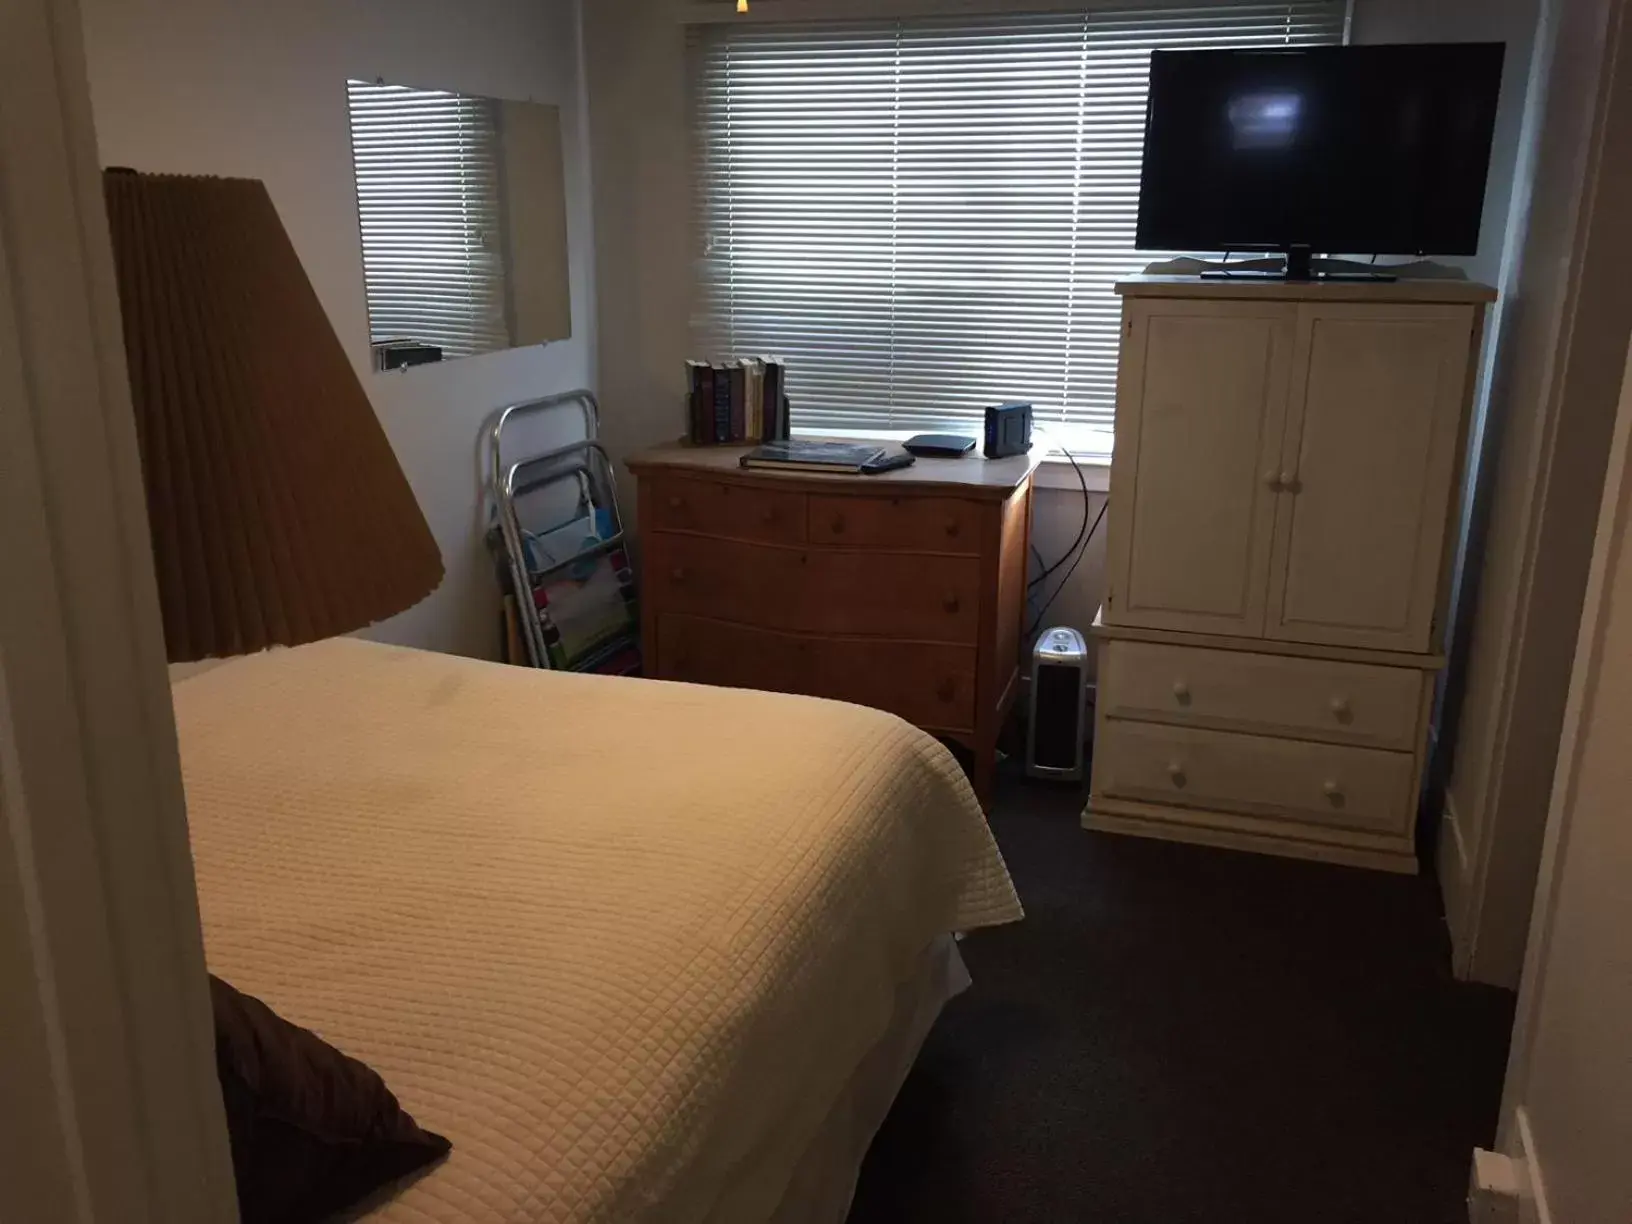 Bedroom, TV/Entertainment Center in Catalina Island Seacrest Inn